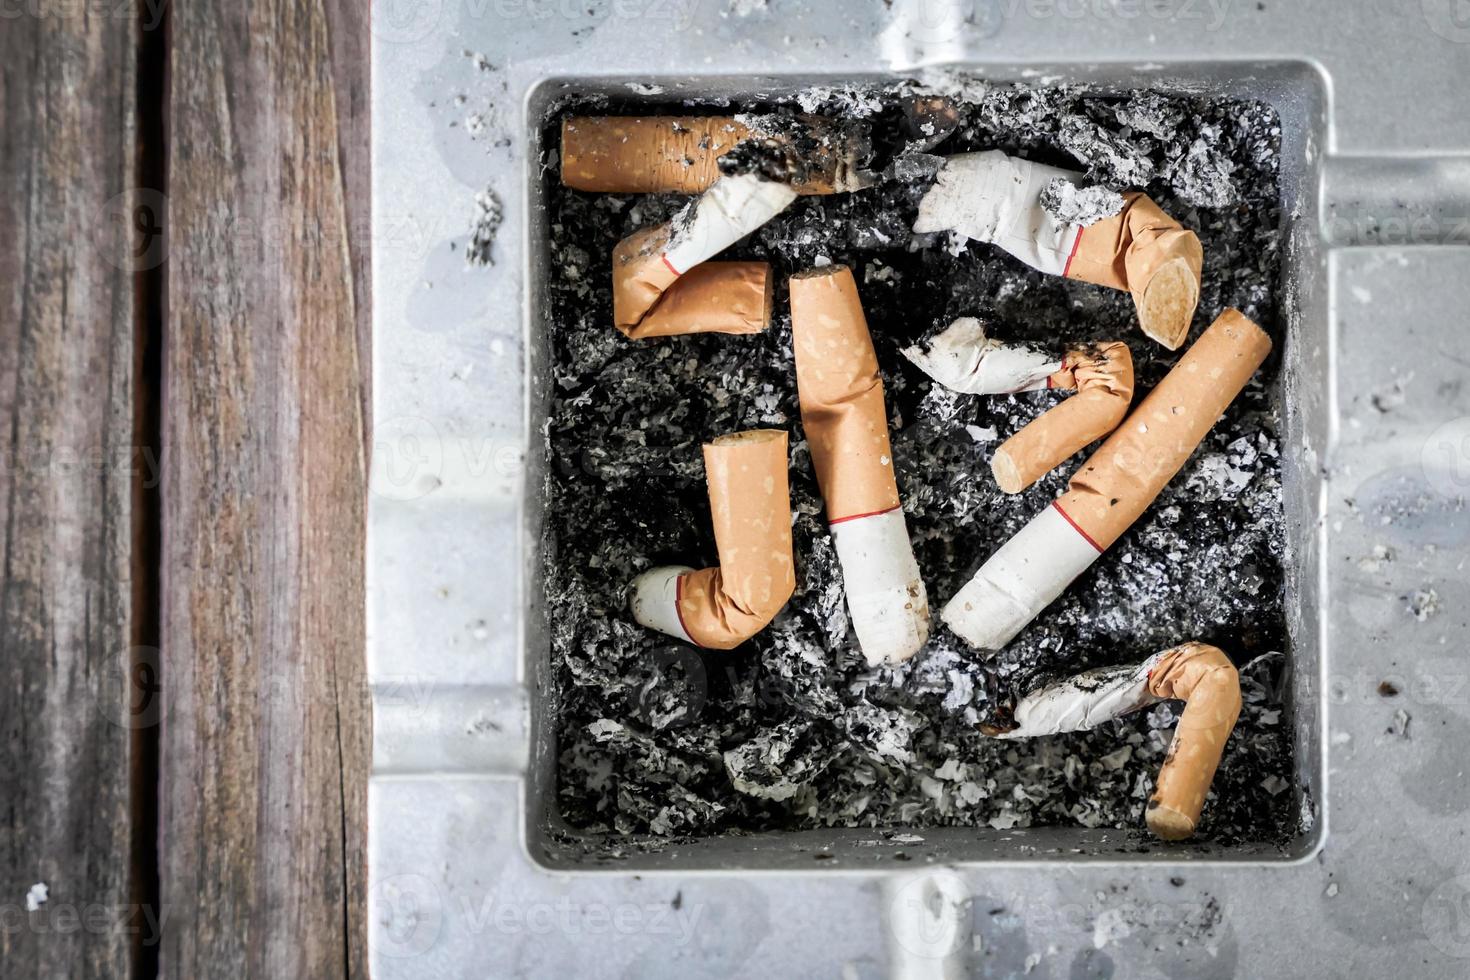 mégots de cigarettes fumés dans le cendrier photo